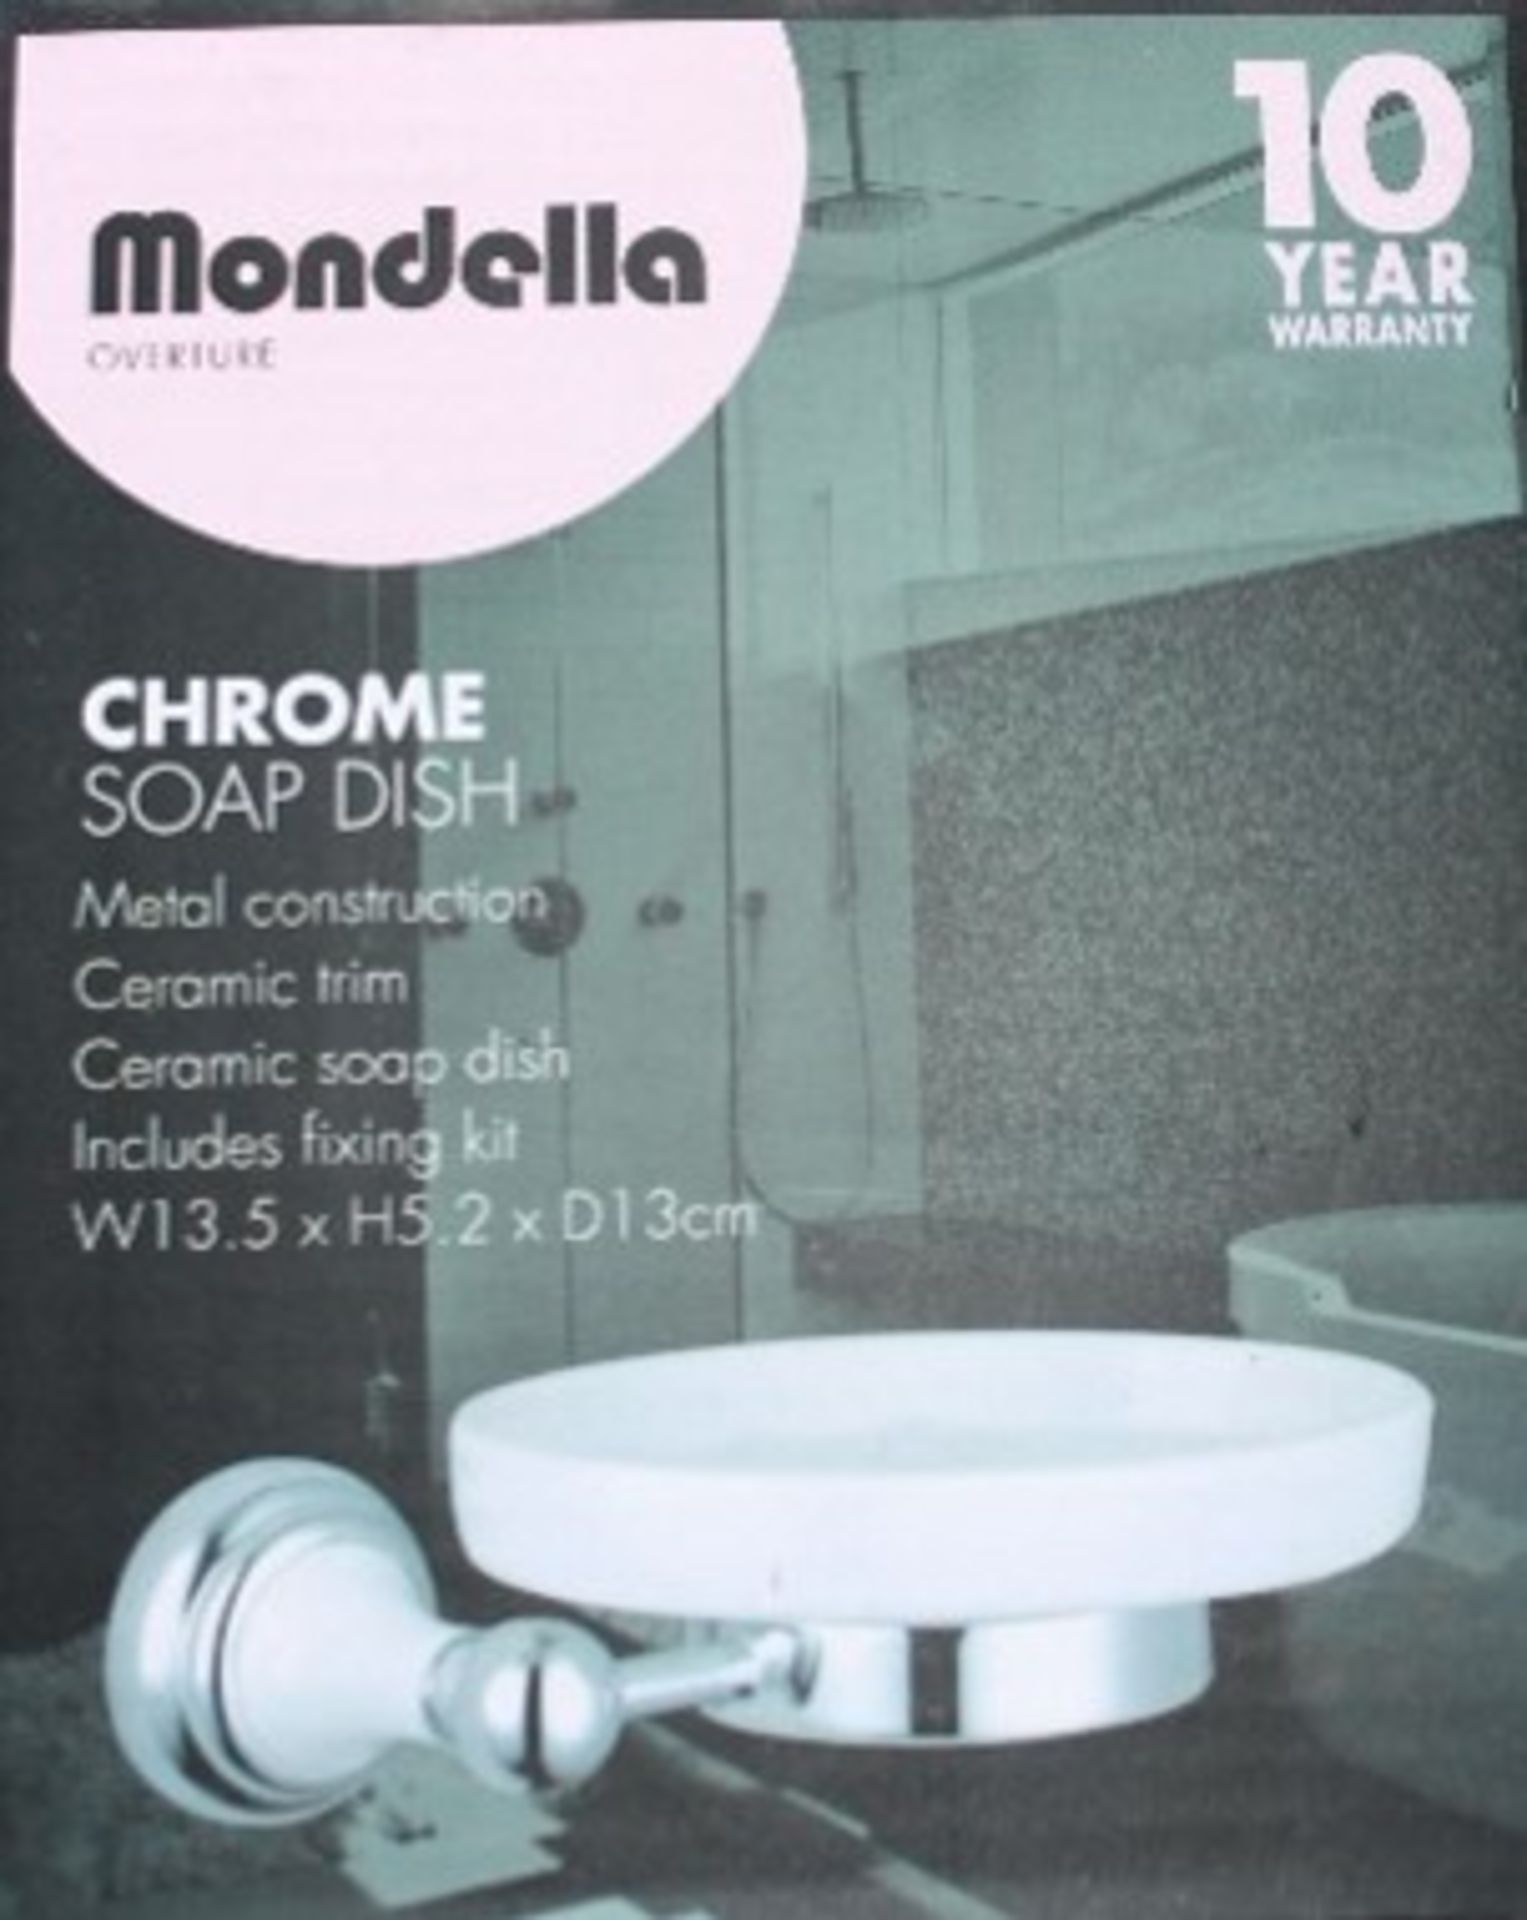 Quantity Of 12 Mondella-Overture Soap Dish - Image 2 of 2